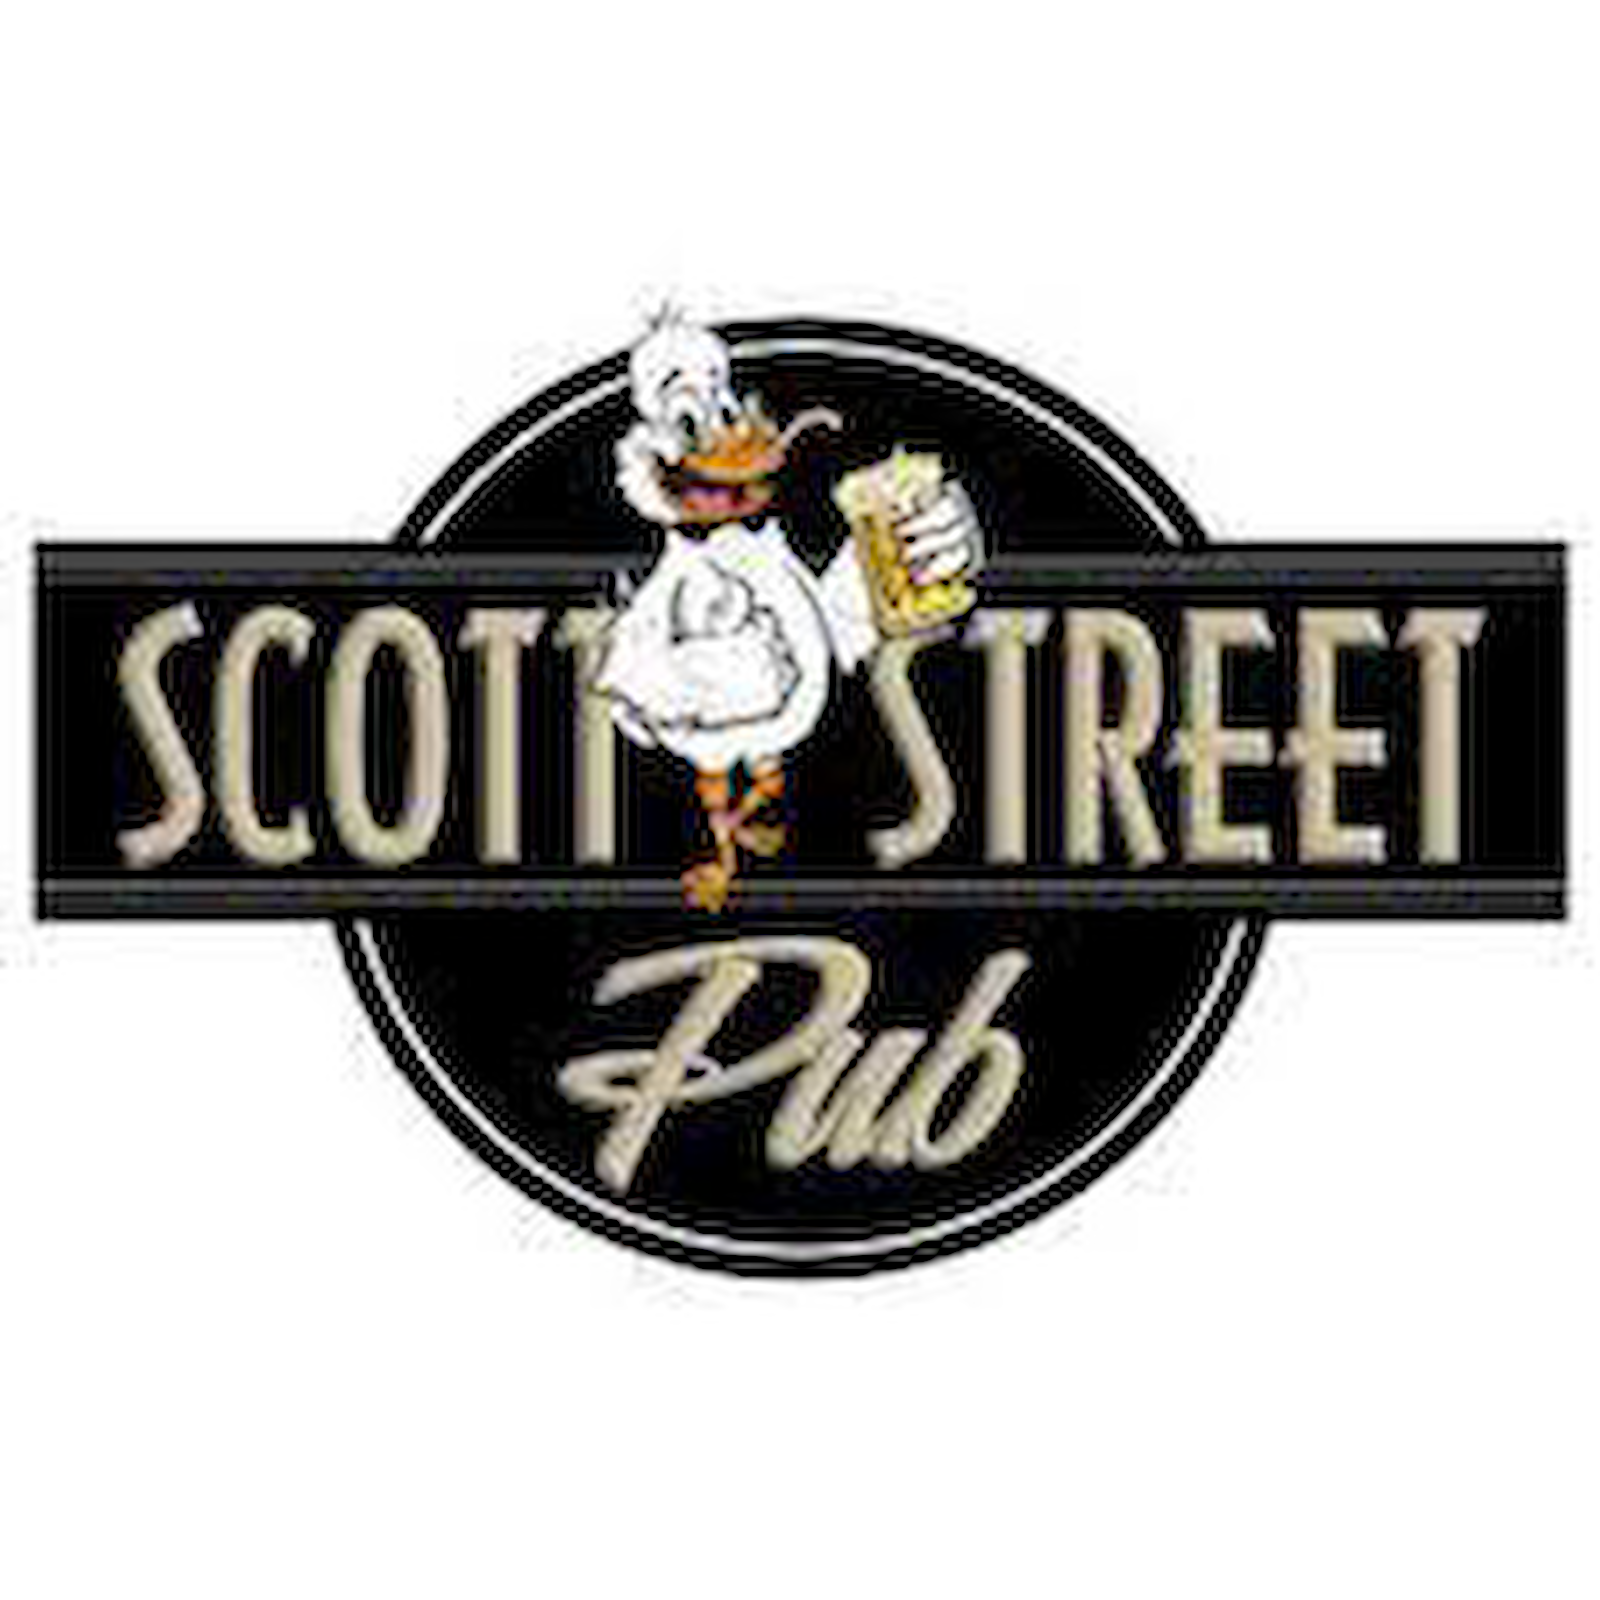 Scott Street Pub